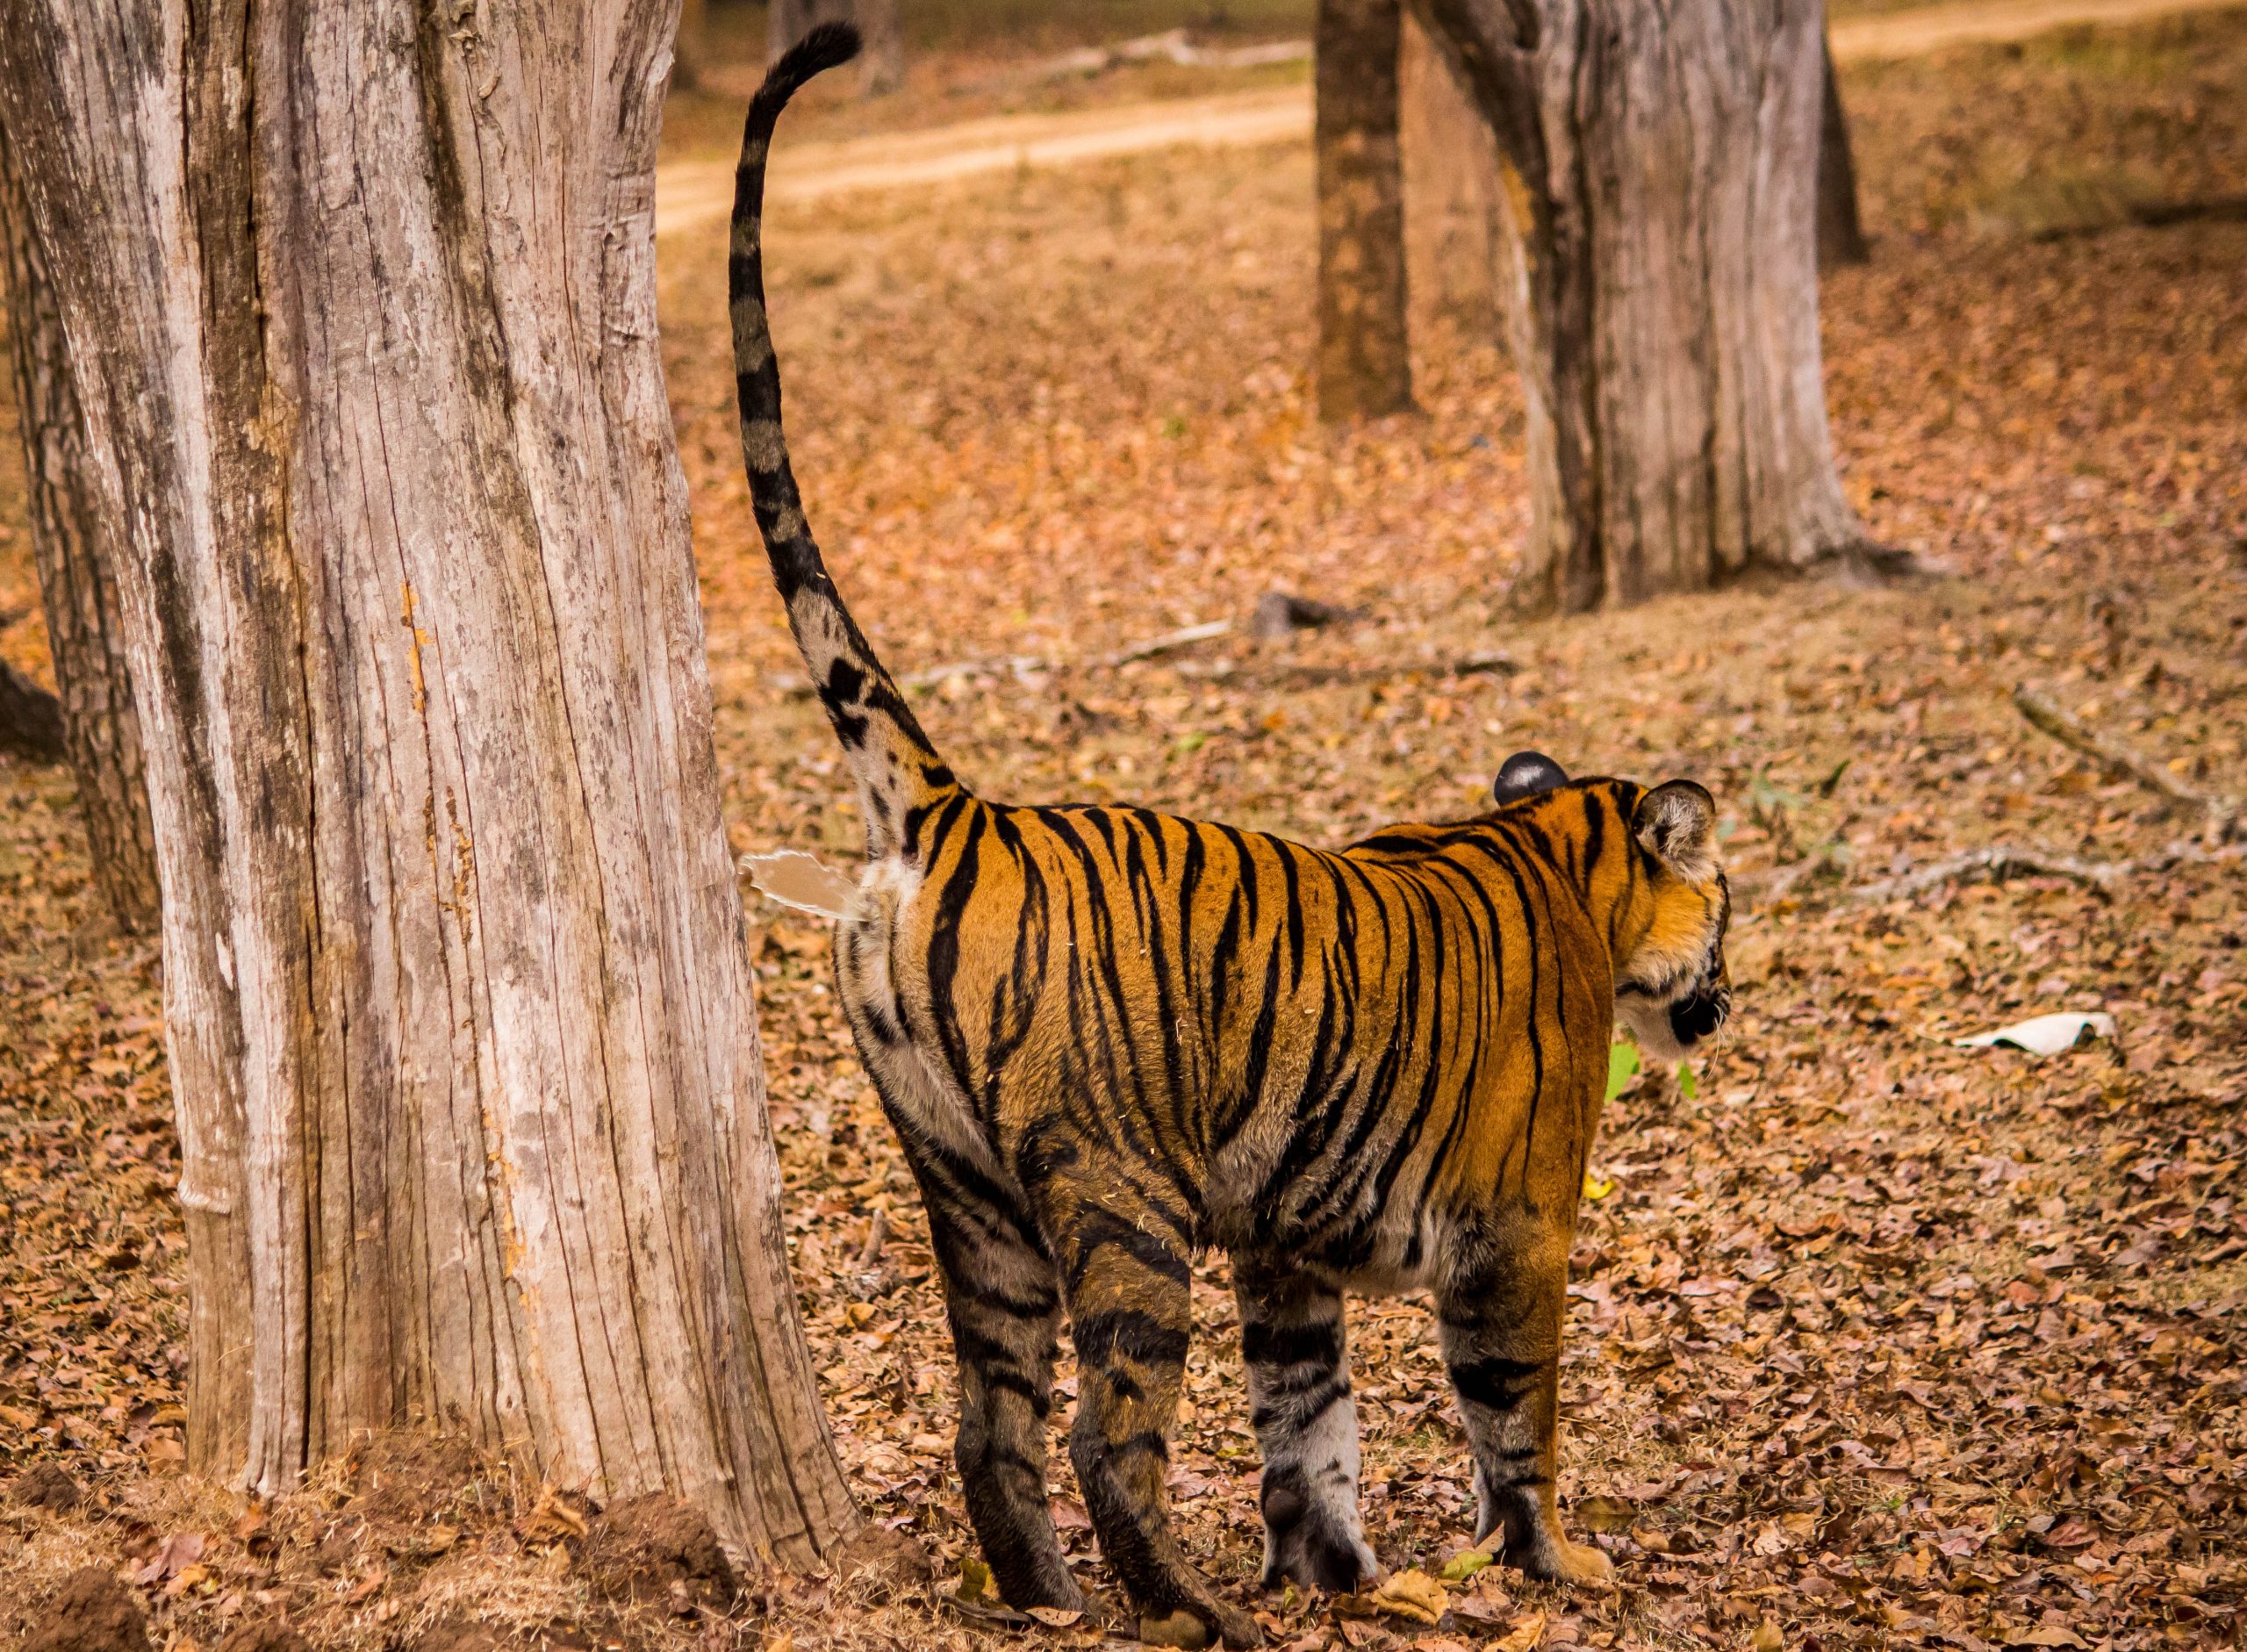 Tiger in Jungle